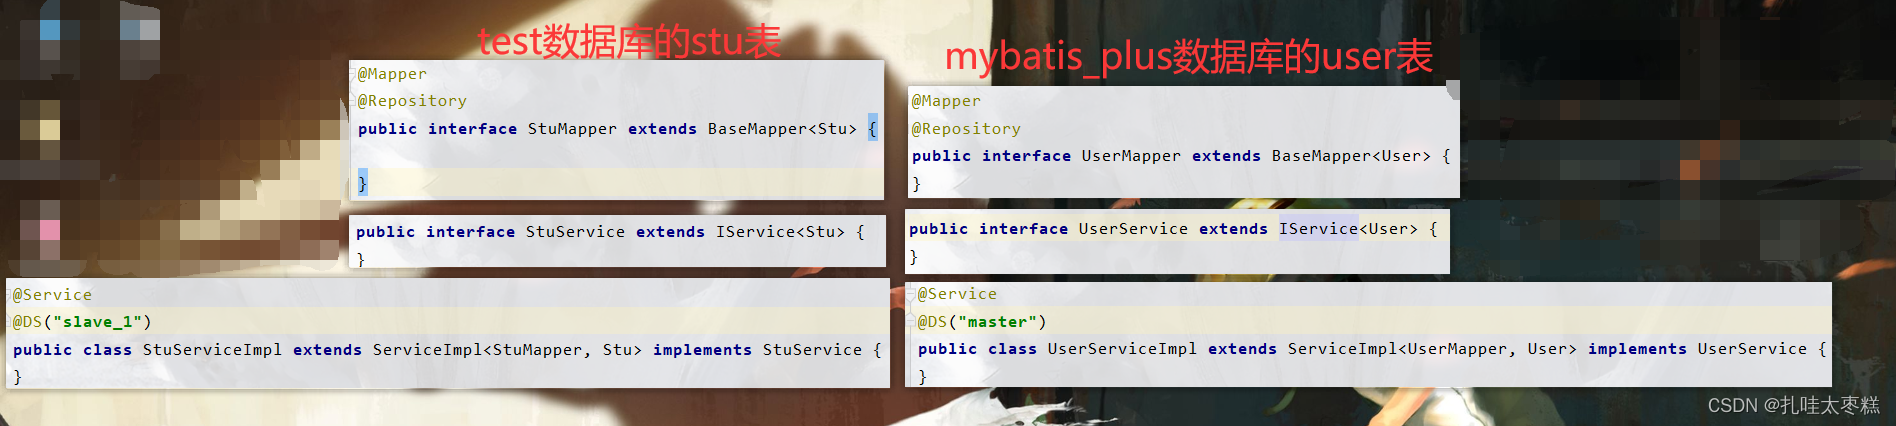 Mybatis-Plus进阶分页,乐观锁插件,通用枚举和多数据源实例分析